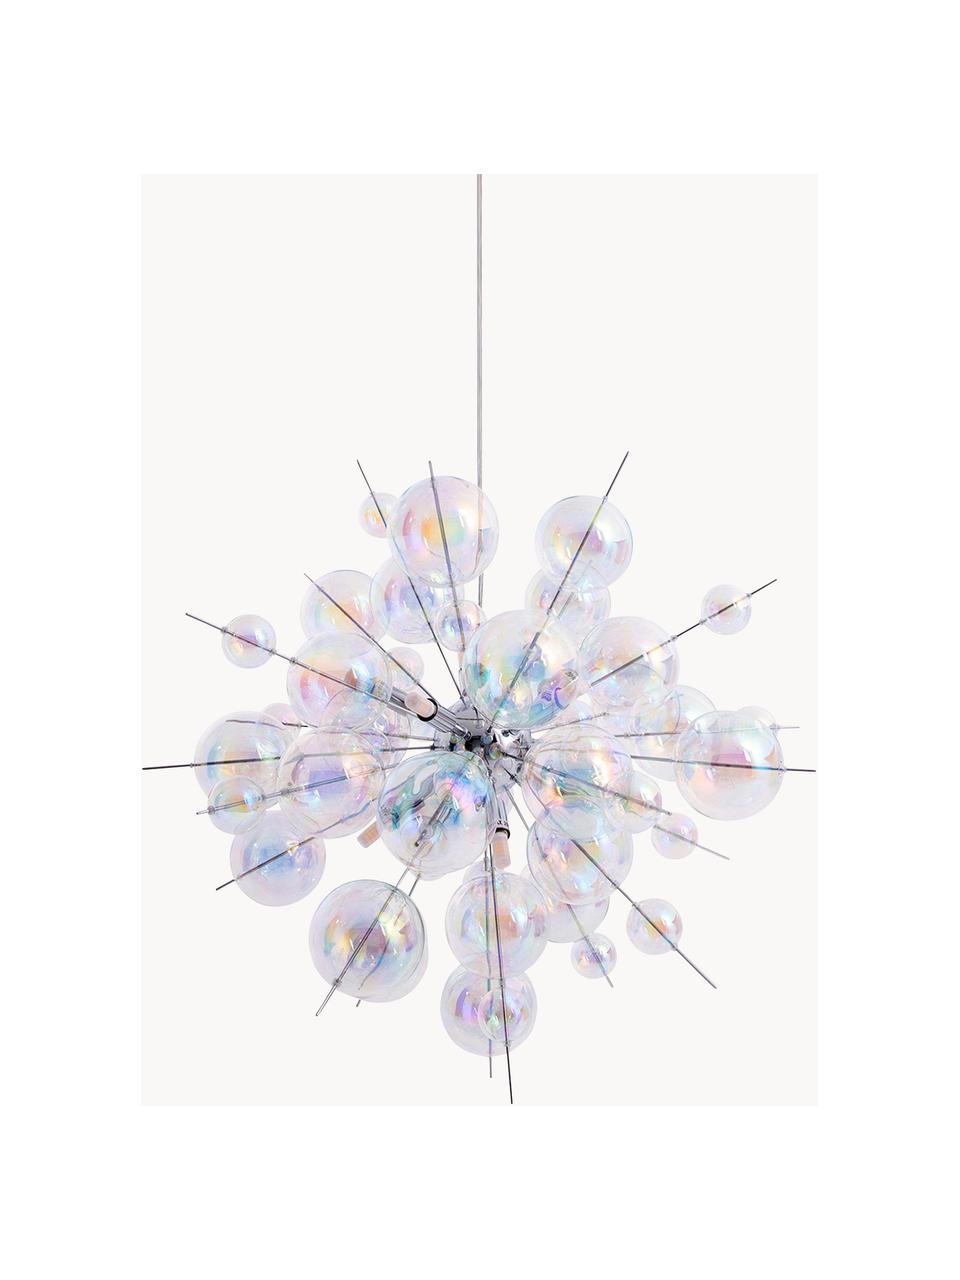 Lampa wisząca ze szklanych kul Explosion, Chrom, transparentny, opalizujący, Ø 65 cm